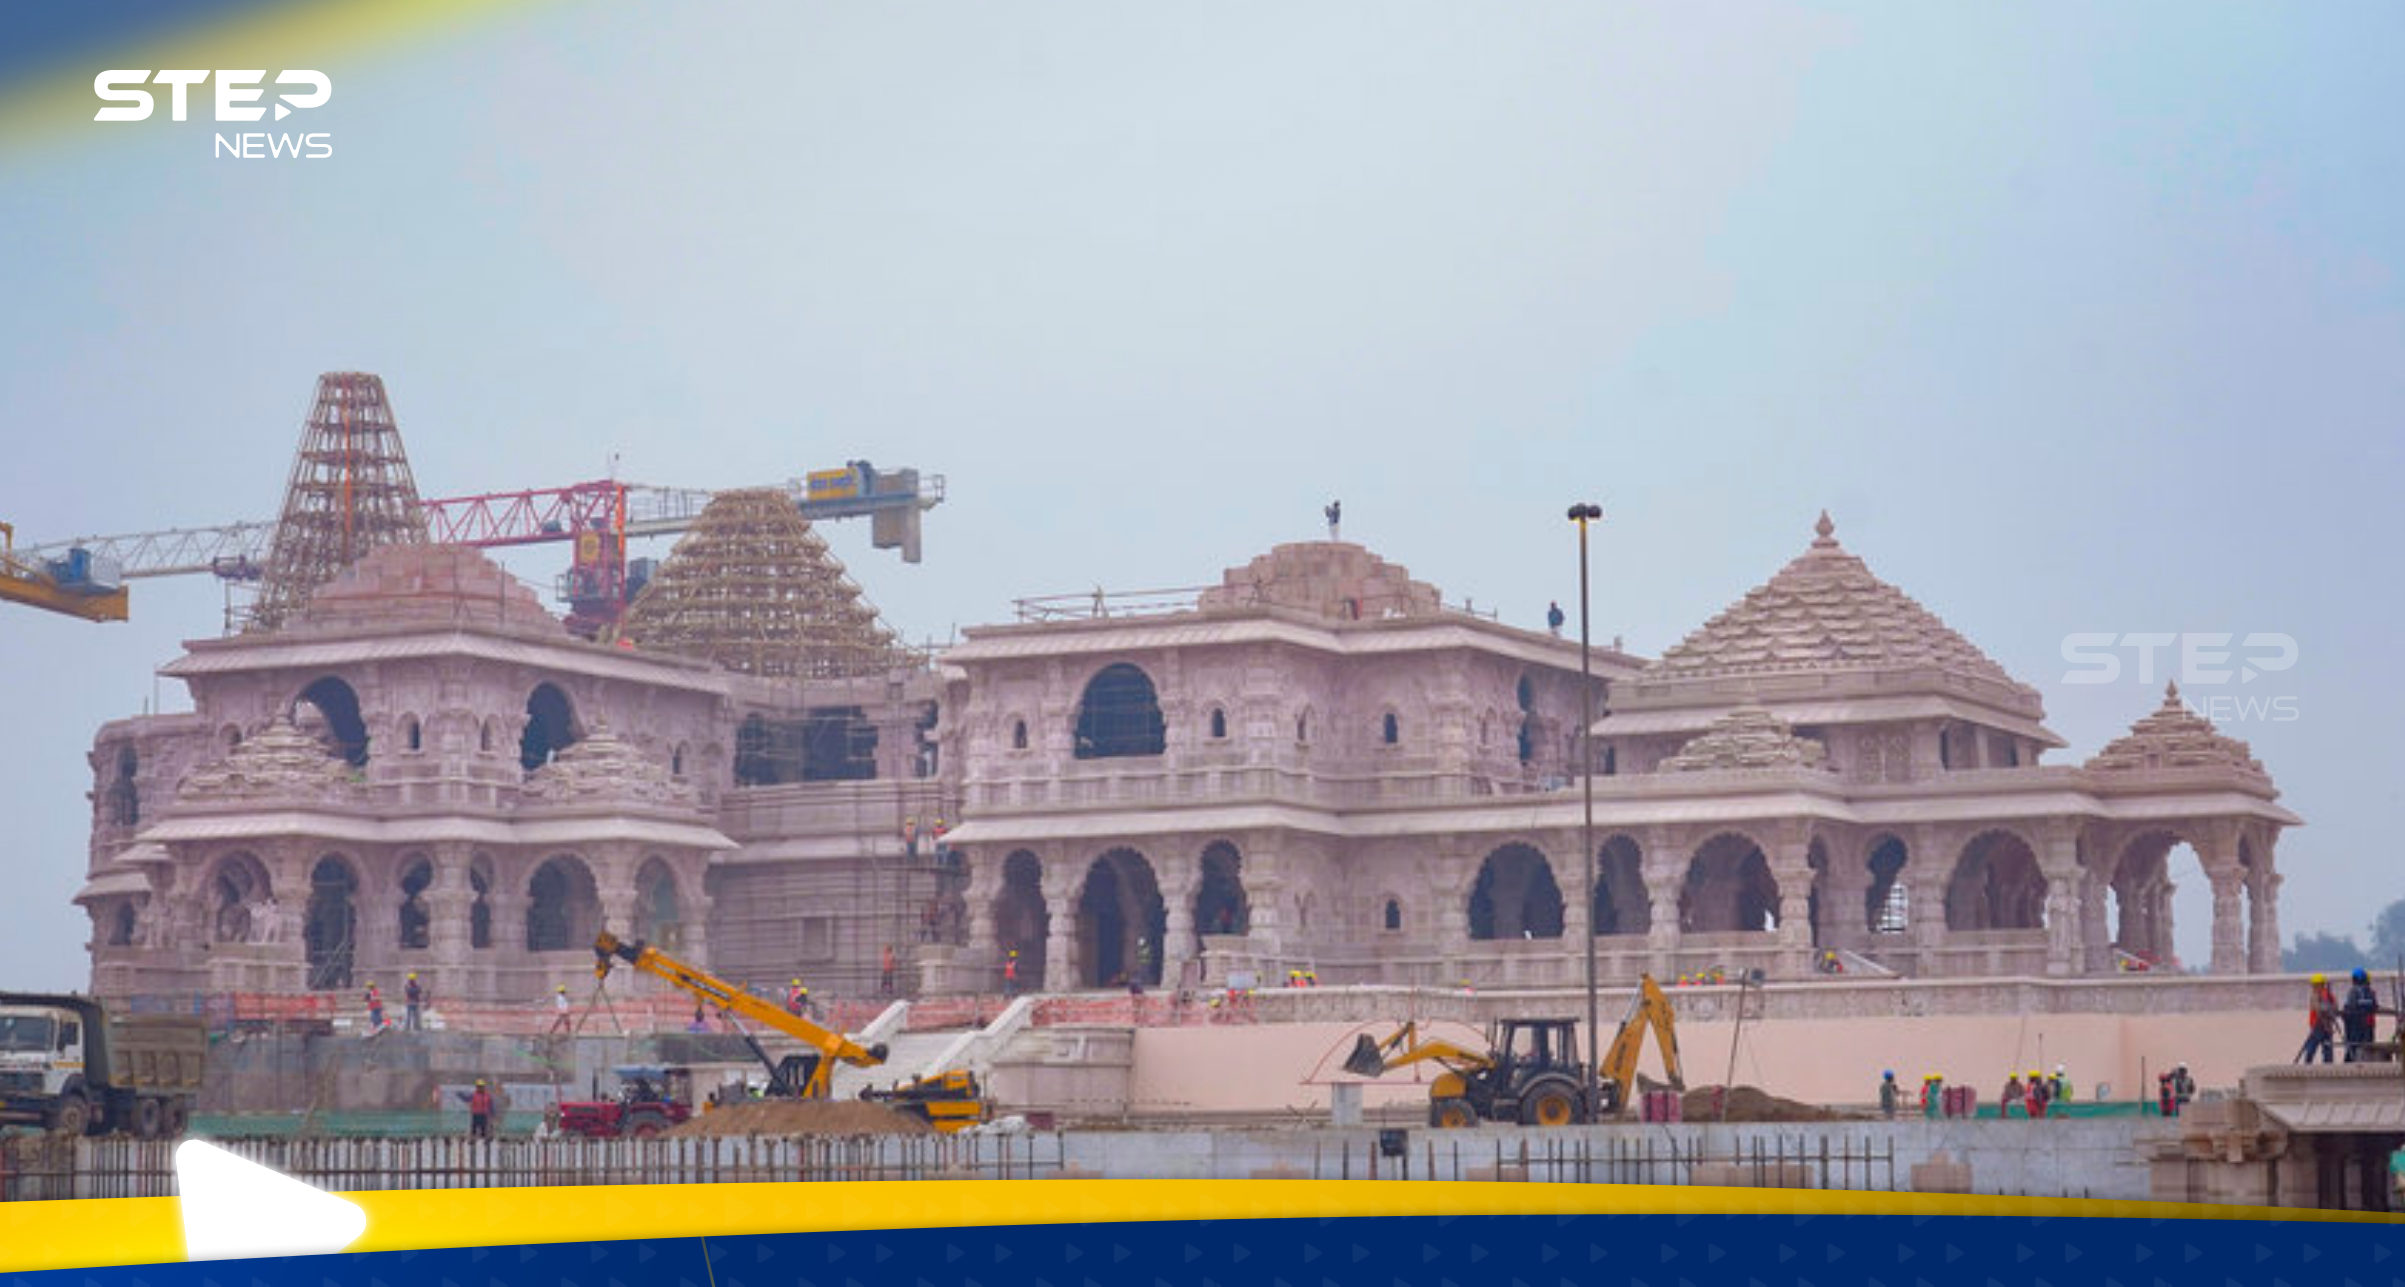 رئيس الوزراء الهندي يفتتح معبداً هندوسياً على انقاض مسجد مُدمر ويثير الجدل